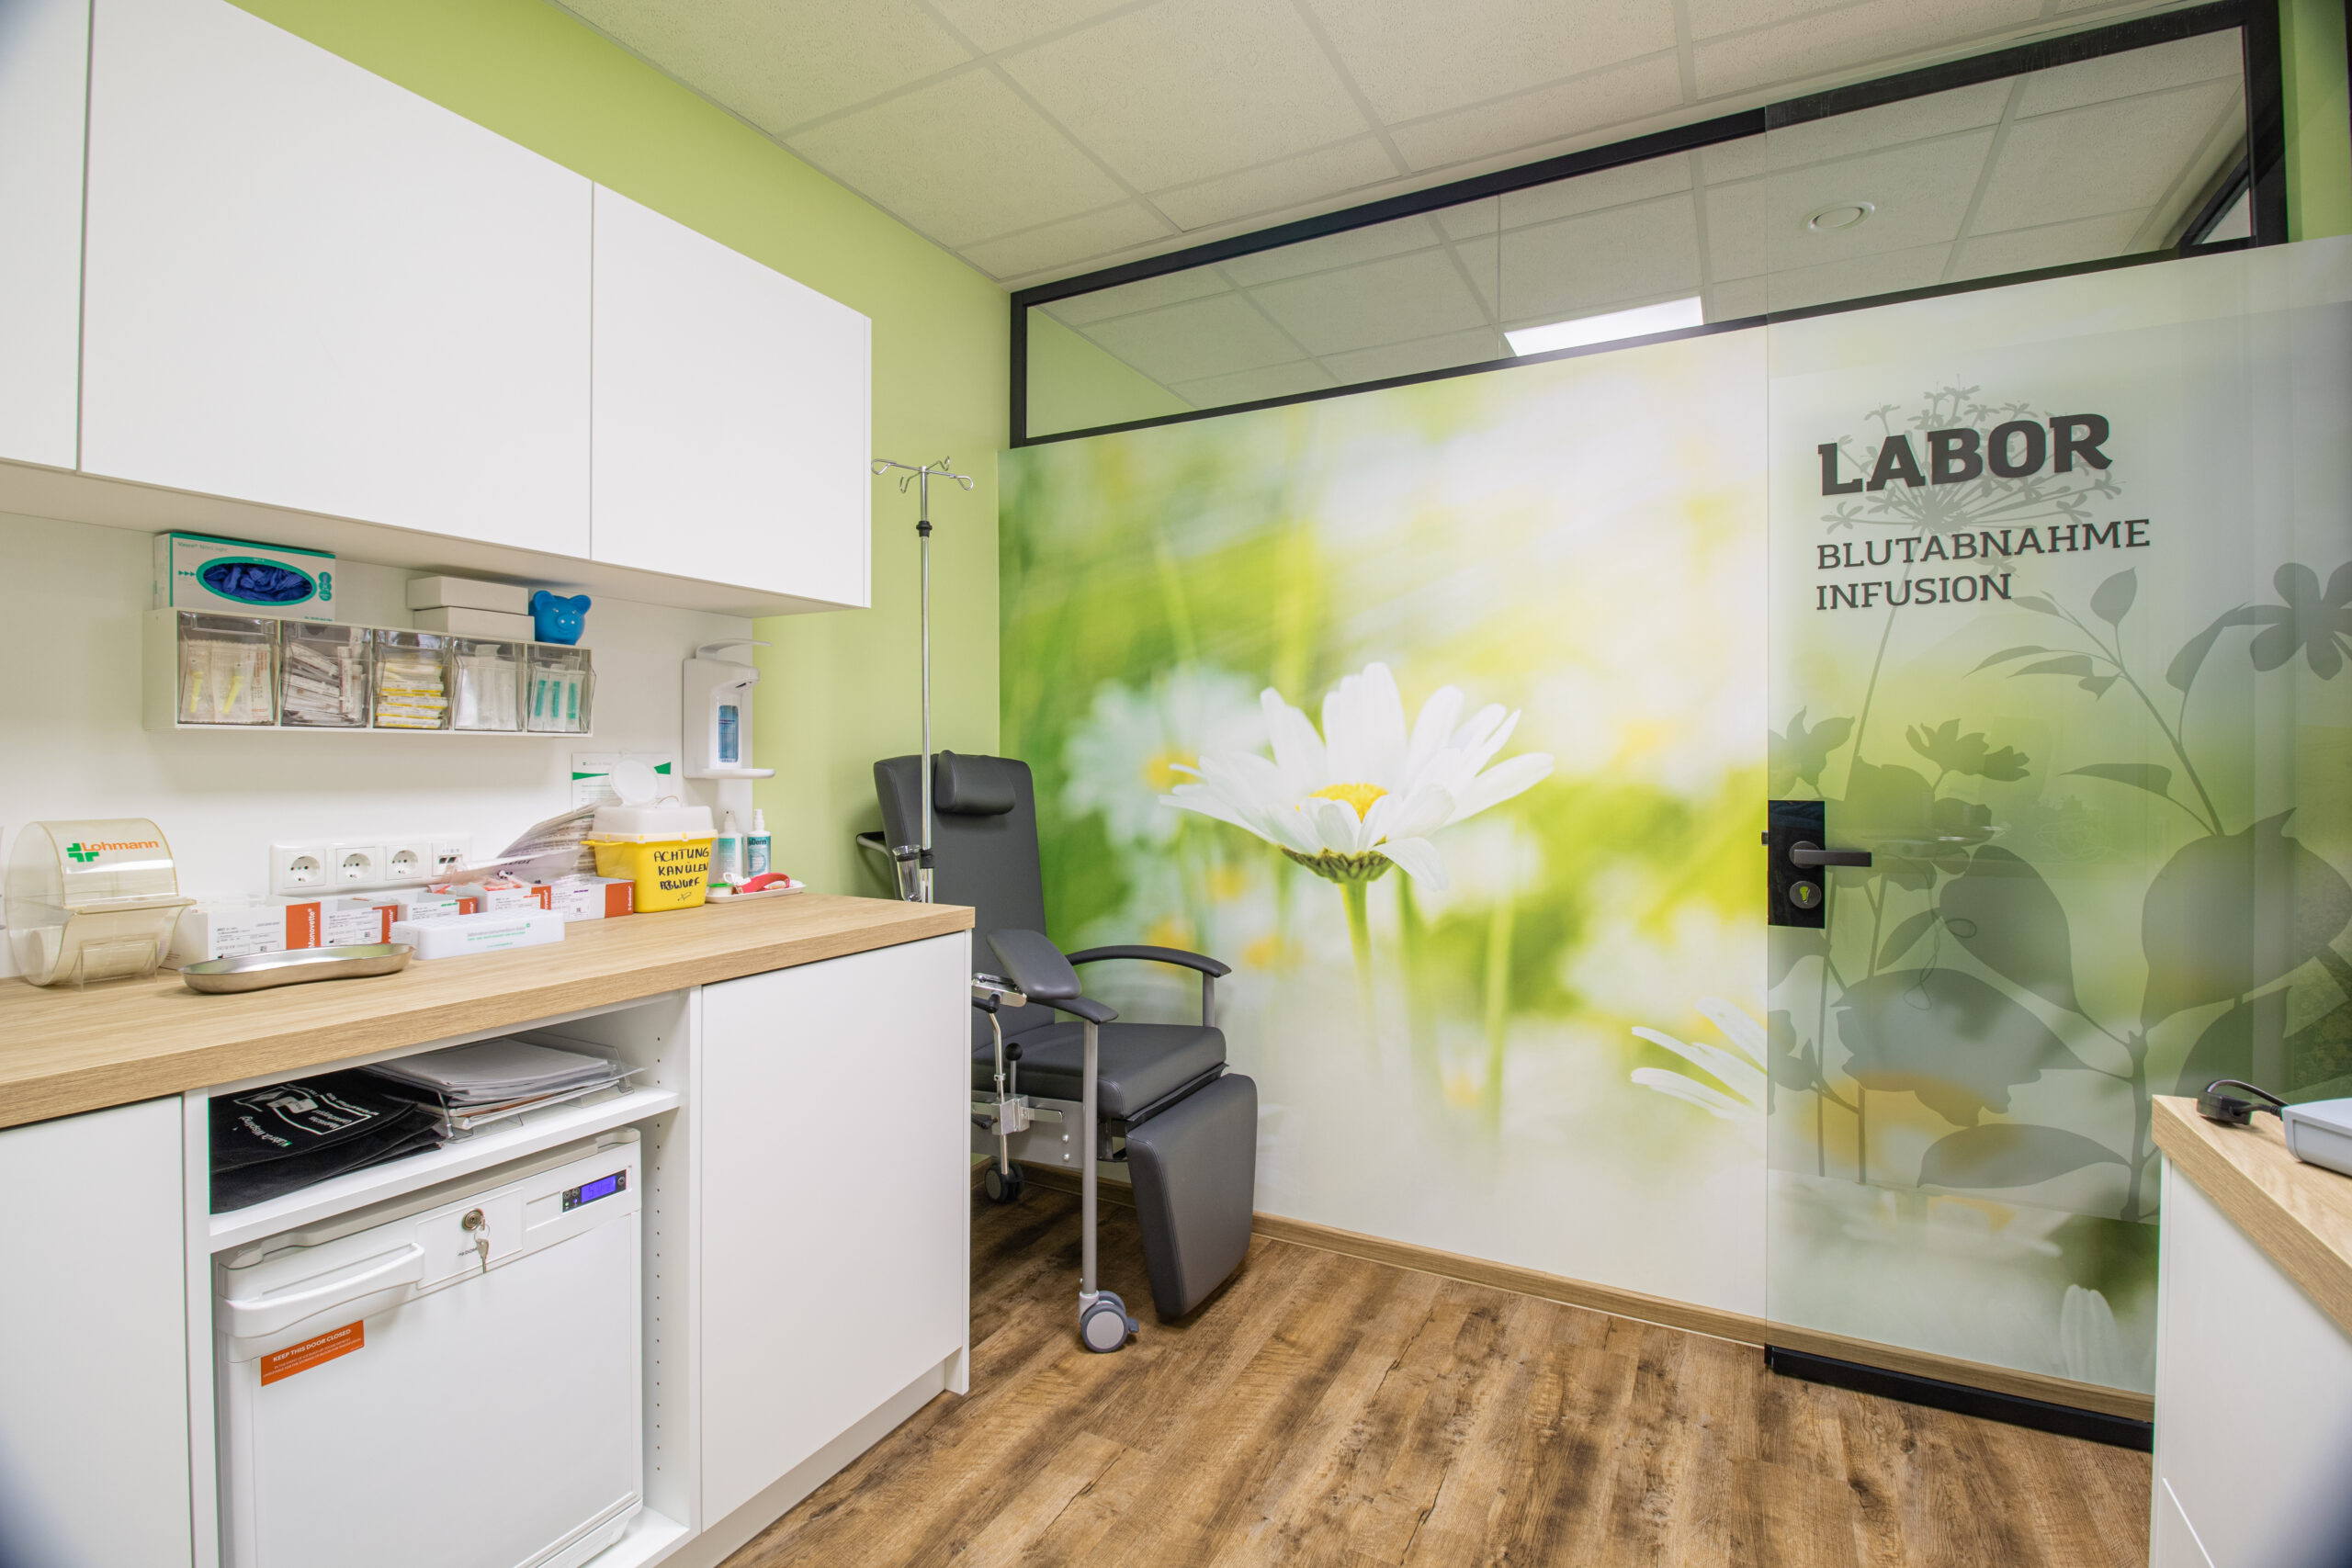 Das Labor mit hellgrünen Wänden und einer Bildtapete mit einer Blumenwiese. Die Laboreinrichtung mit Blutabnahmestuhl und Laborküchenschränken mit Medizin-Kühlschrank.